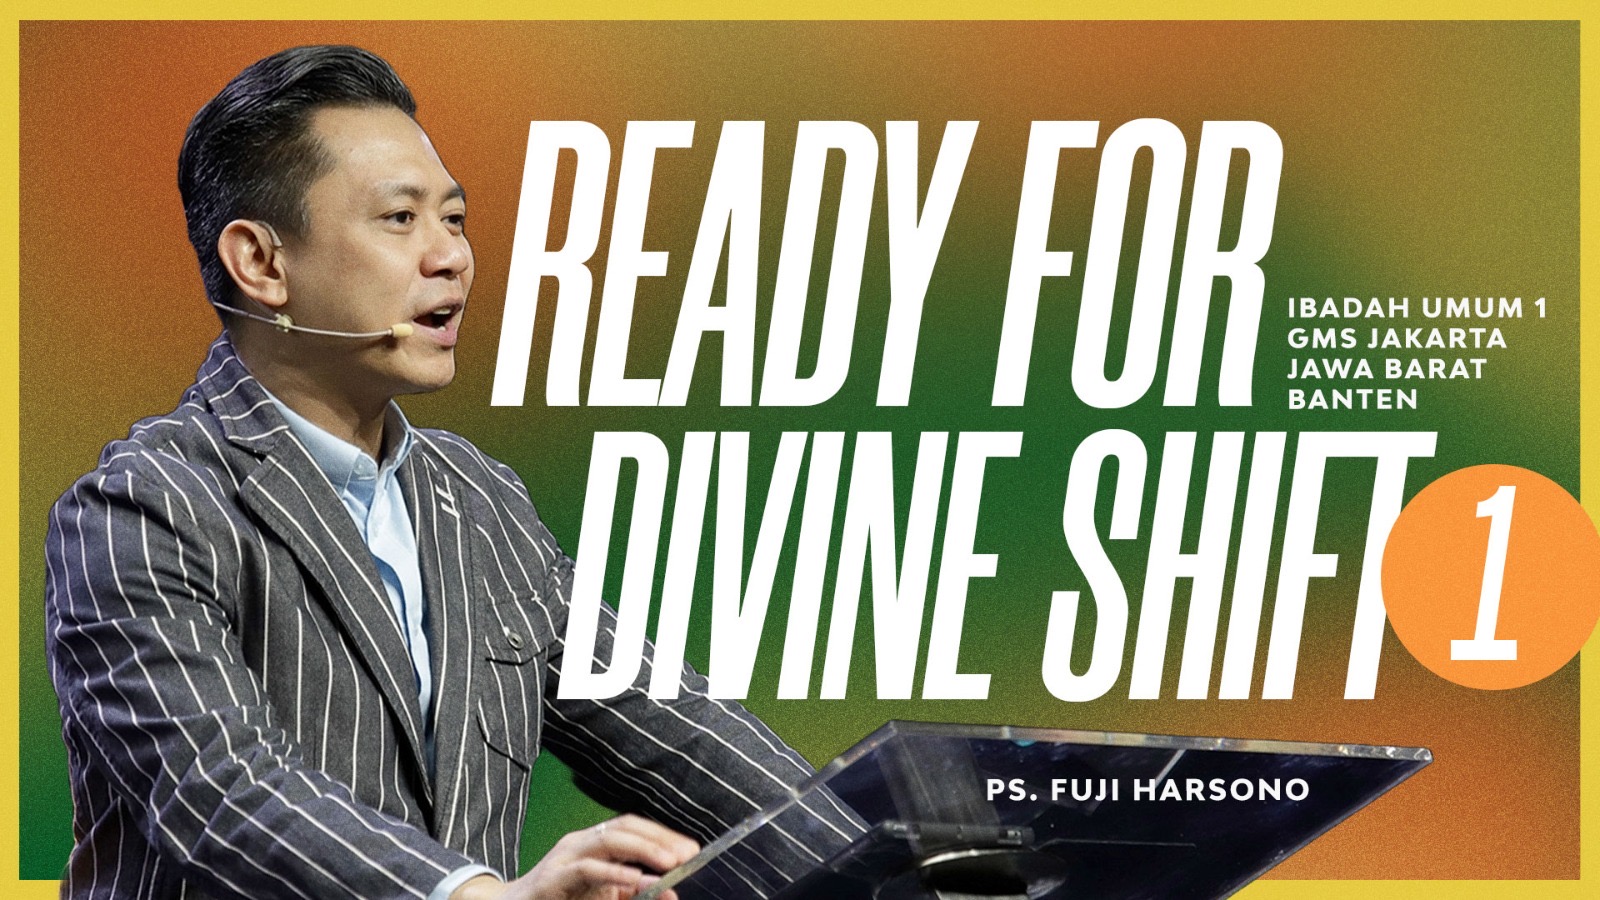 Ready For Divine Shitfs - Ps. Fuji Harsono